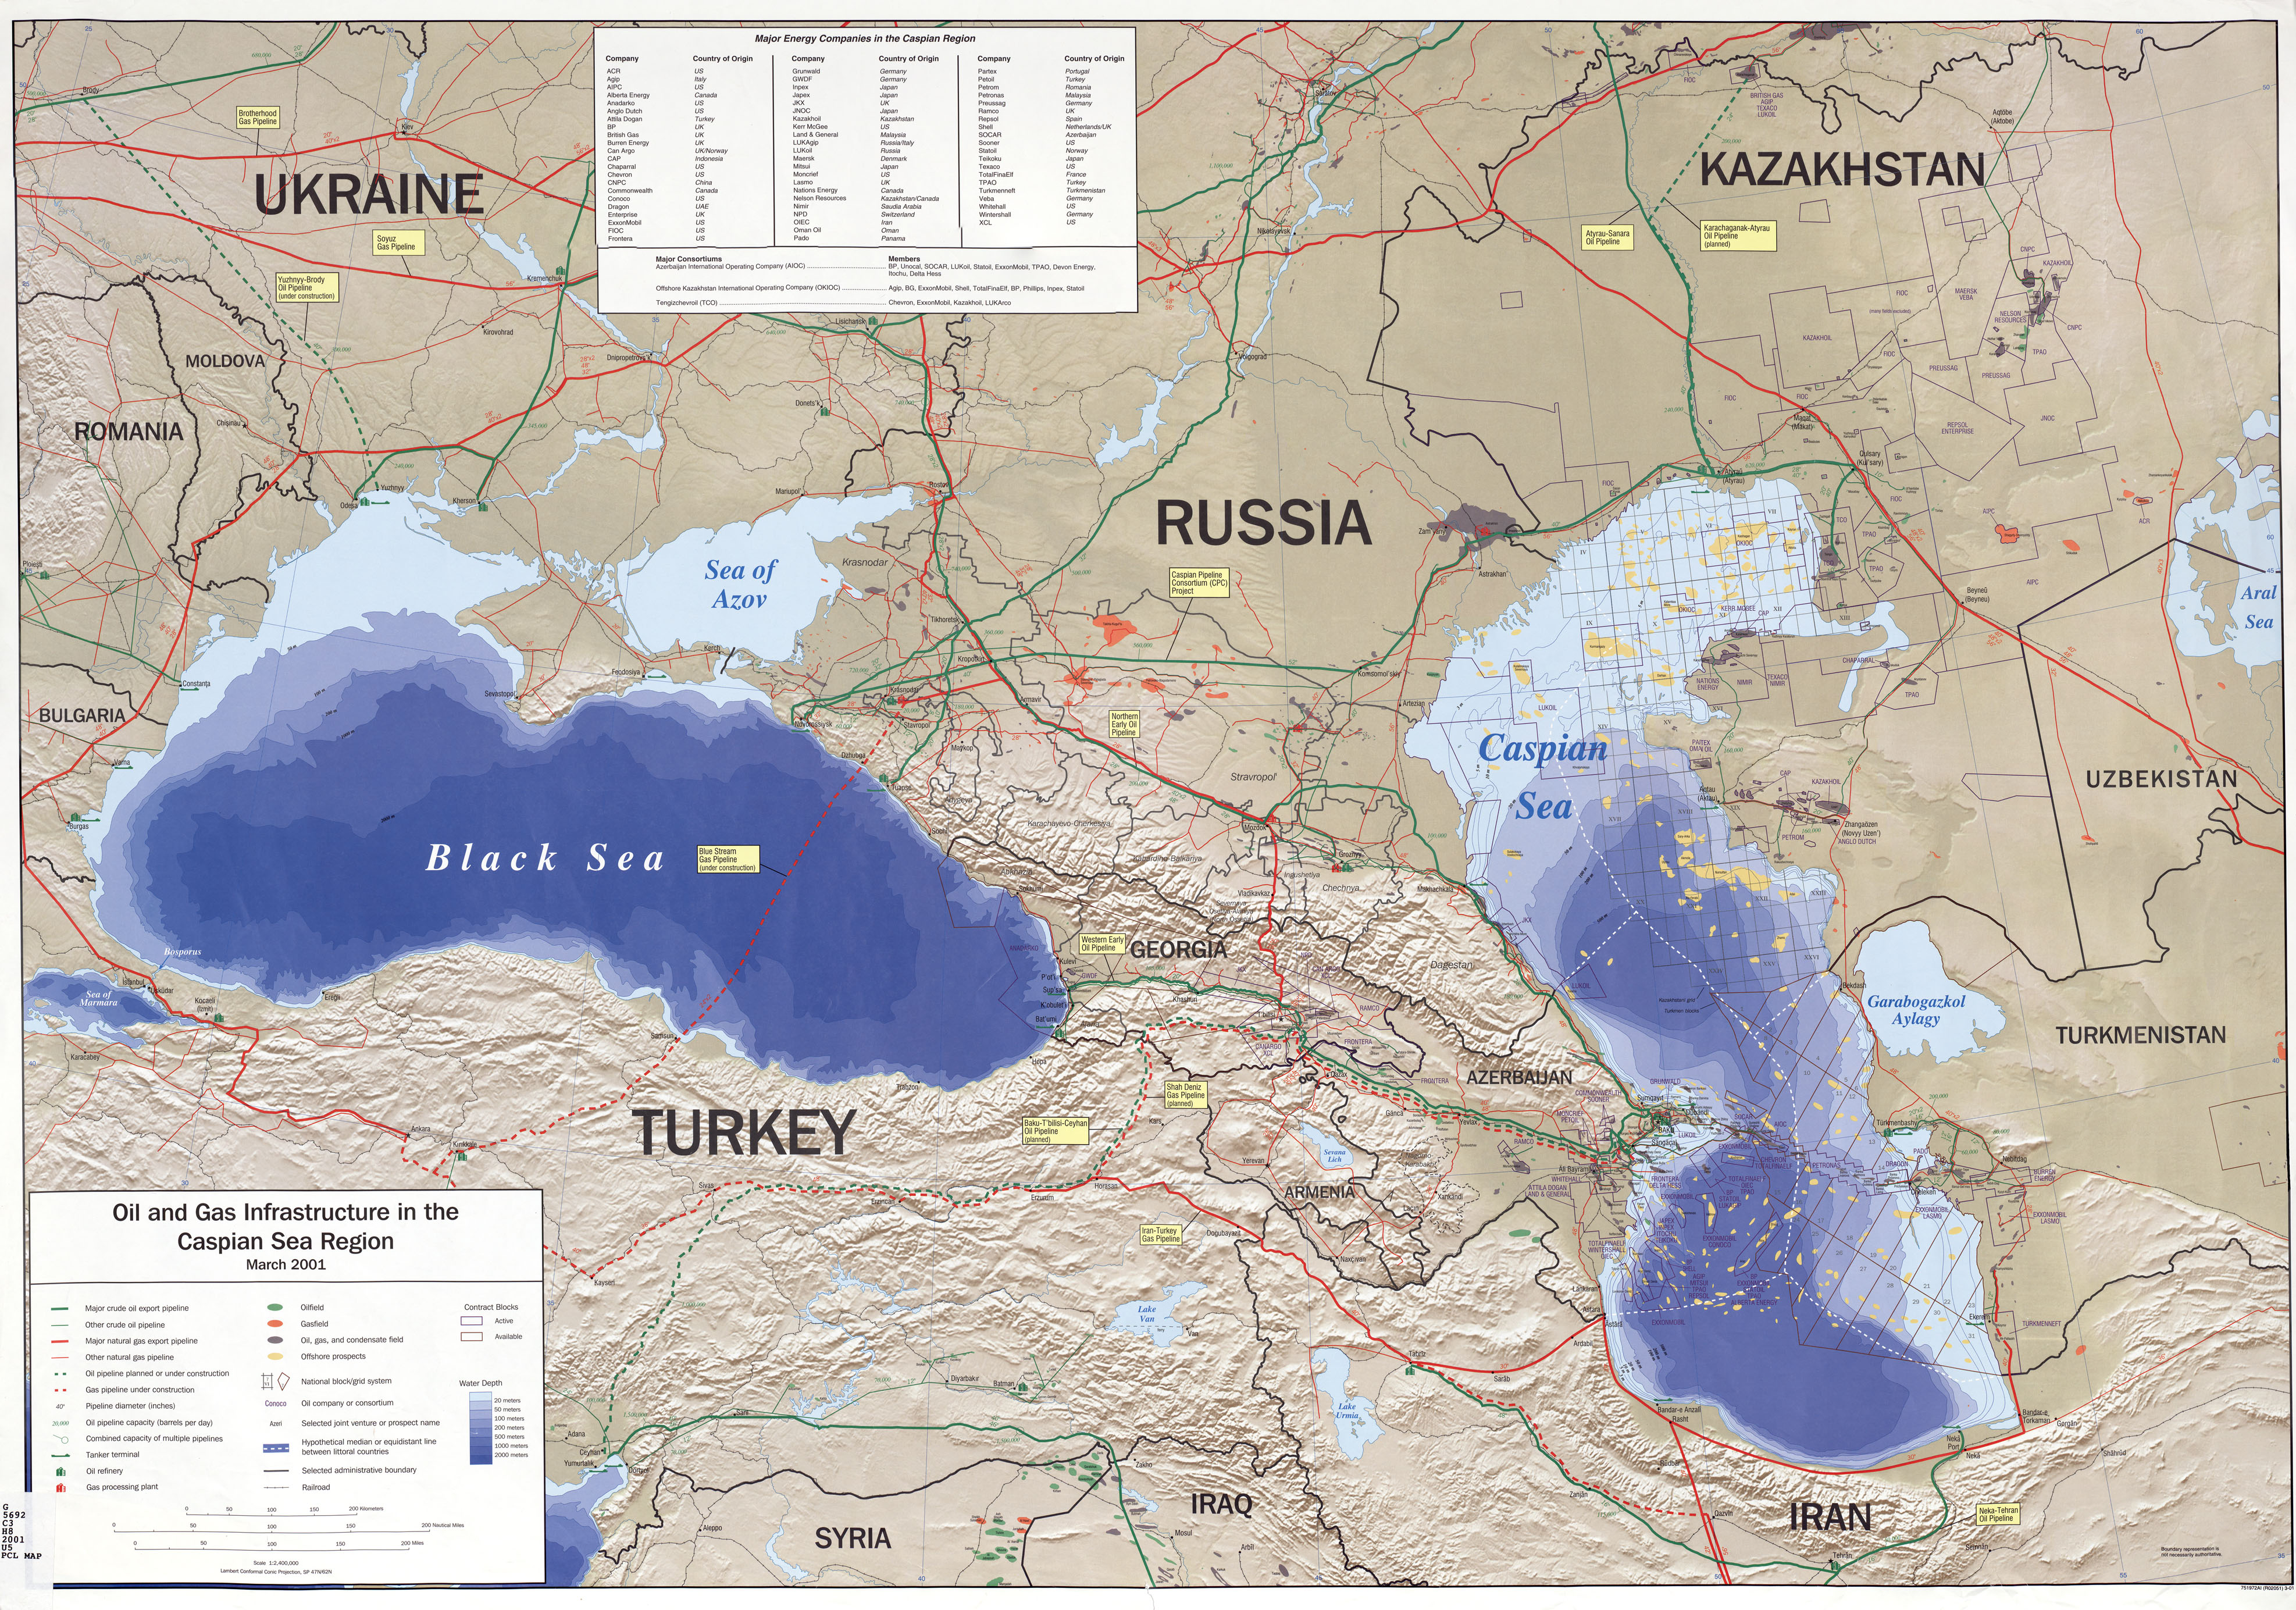 Infraestructuras Petroleras y Gasíferas en la Región del Mar Caspio y del Mar Negro